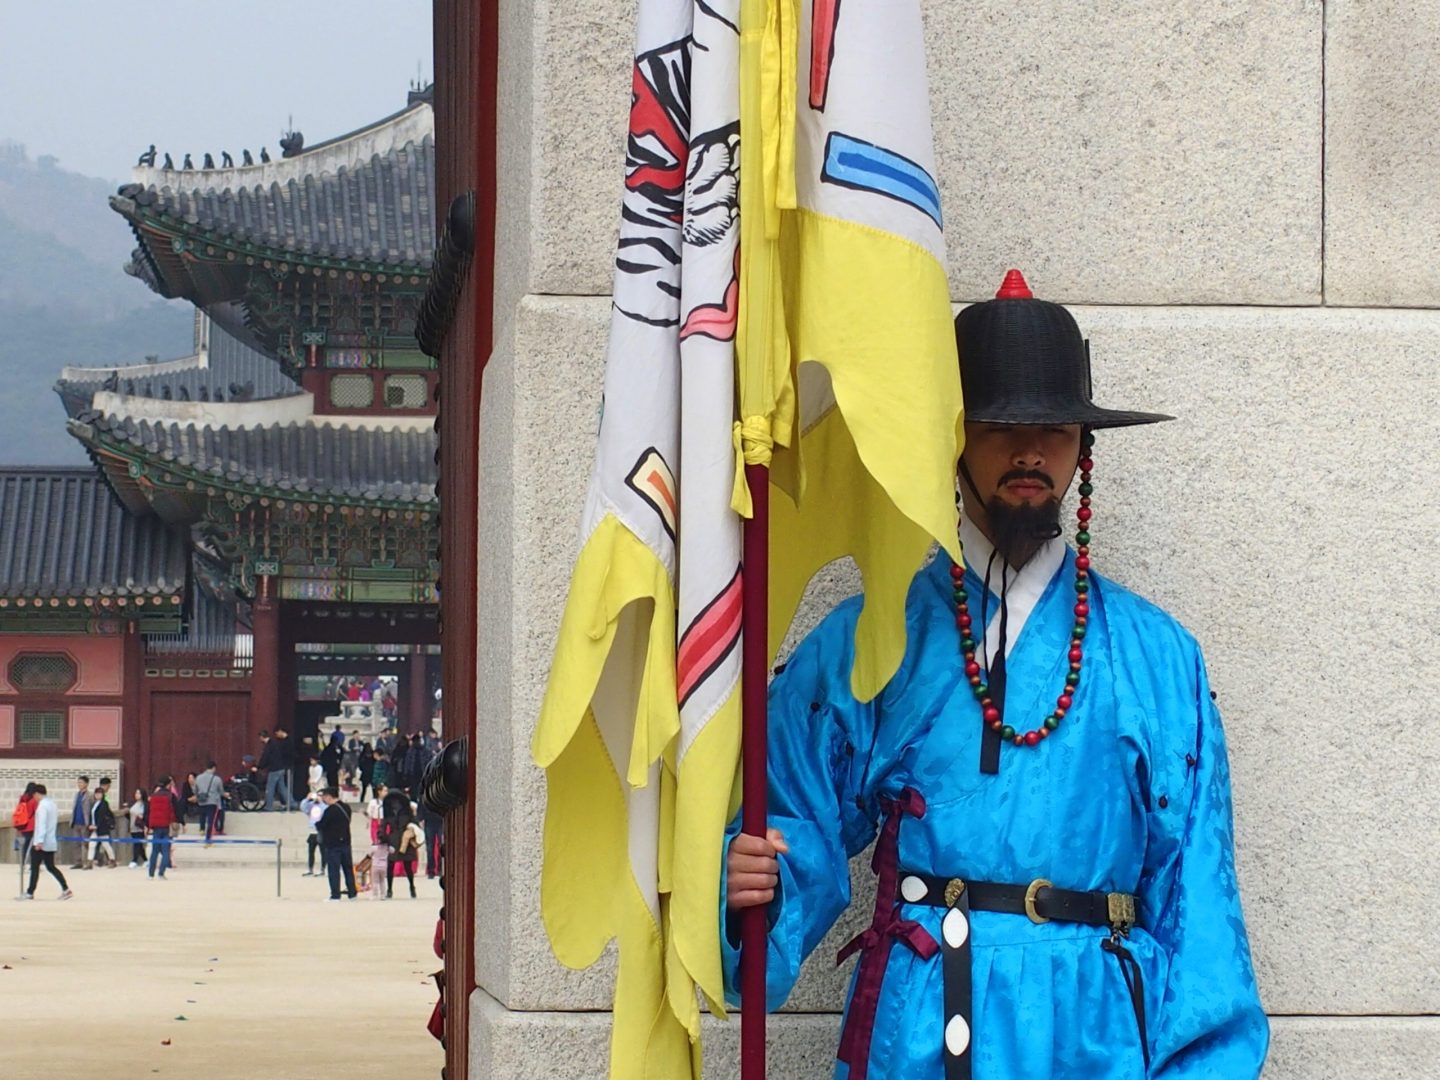 Porte entrée Palais royal et garde Seoul Corée du sud